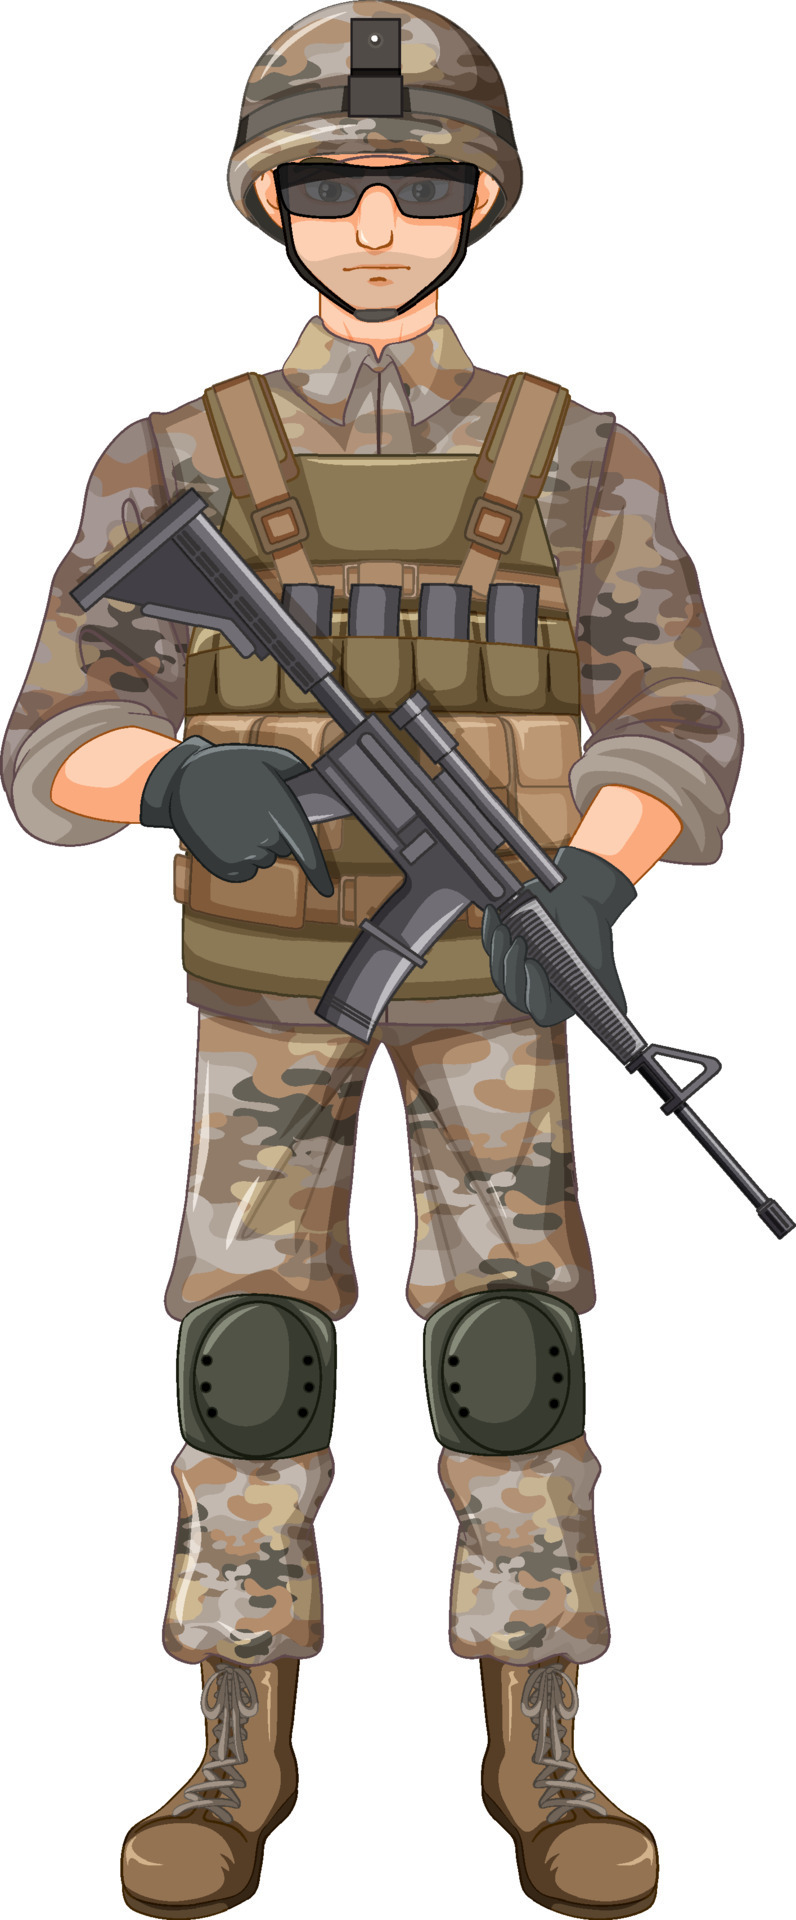 Soldier in uniform cartoon character 7498732 Vector Art at Vecteezy